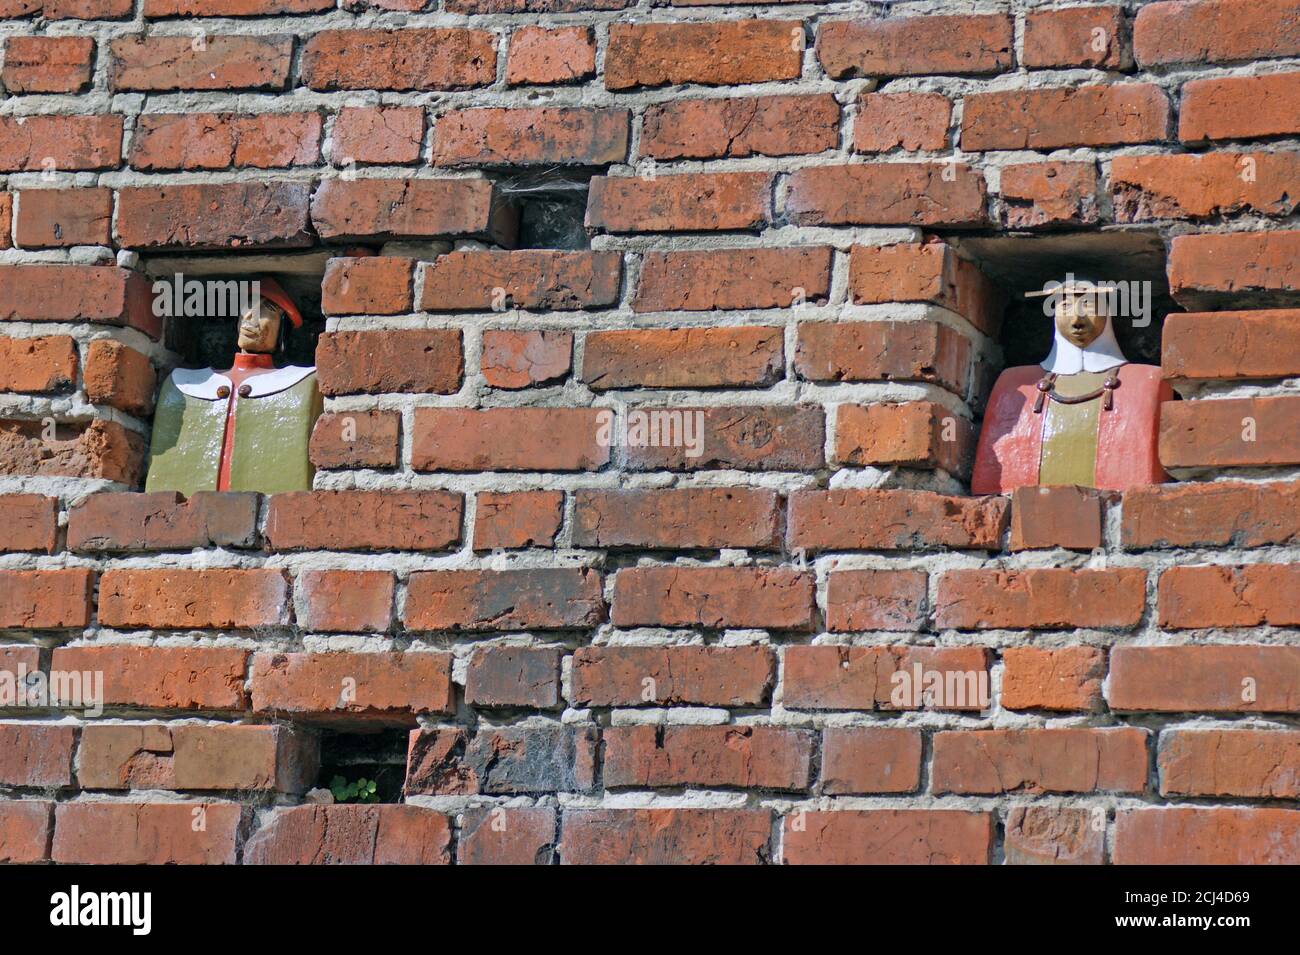 Le figure del townspeople di ordine teutonico sembrano guardare fuori i fori nella parete del mattone che si trova nella città vecchia di Torun, Polonia il 16 luglio 2014. Foto Stock